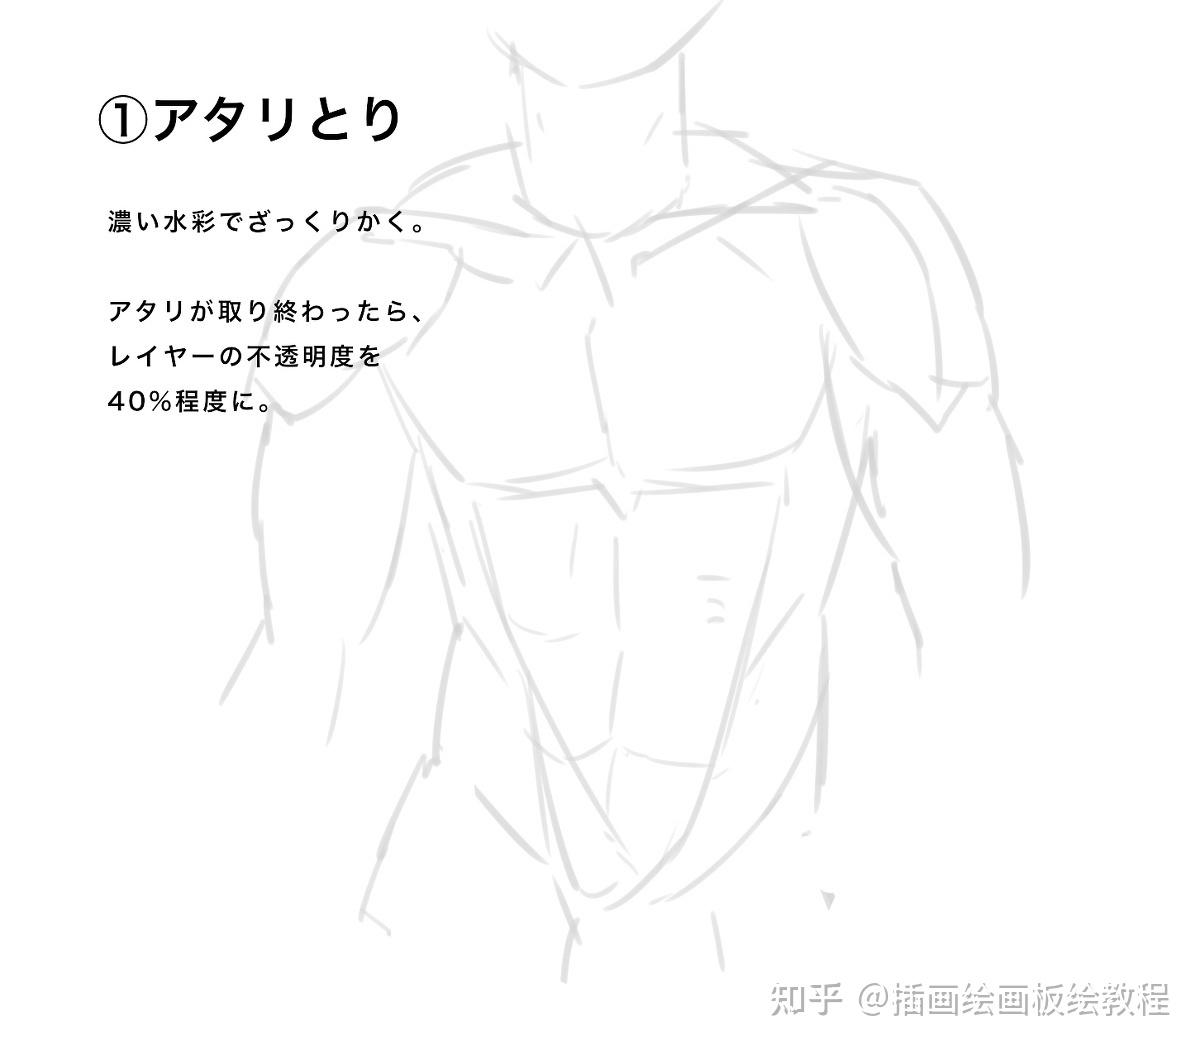 肌肉画法参考 - 优动漫 动漫创作支援平台